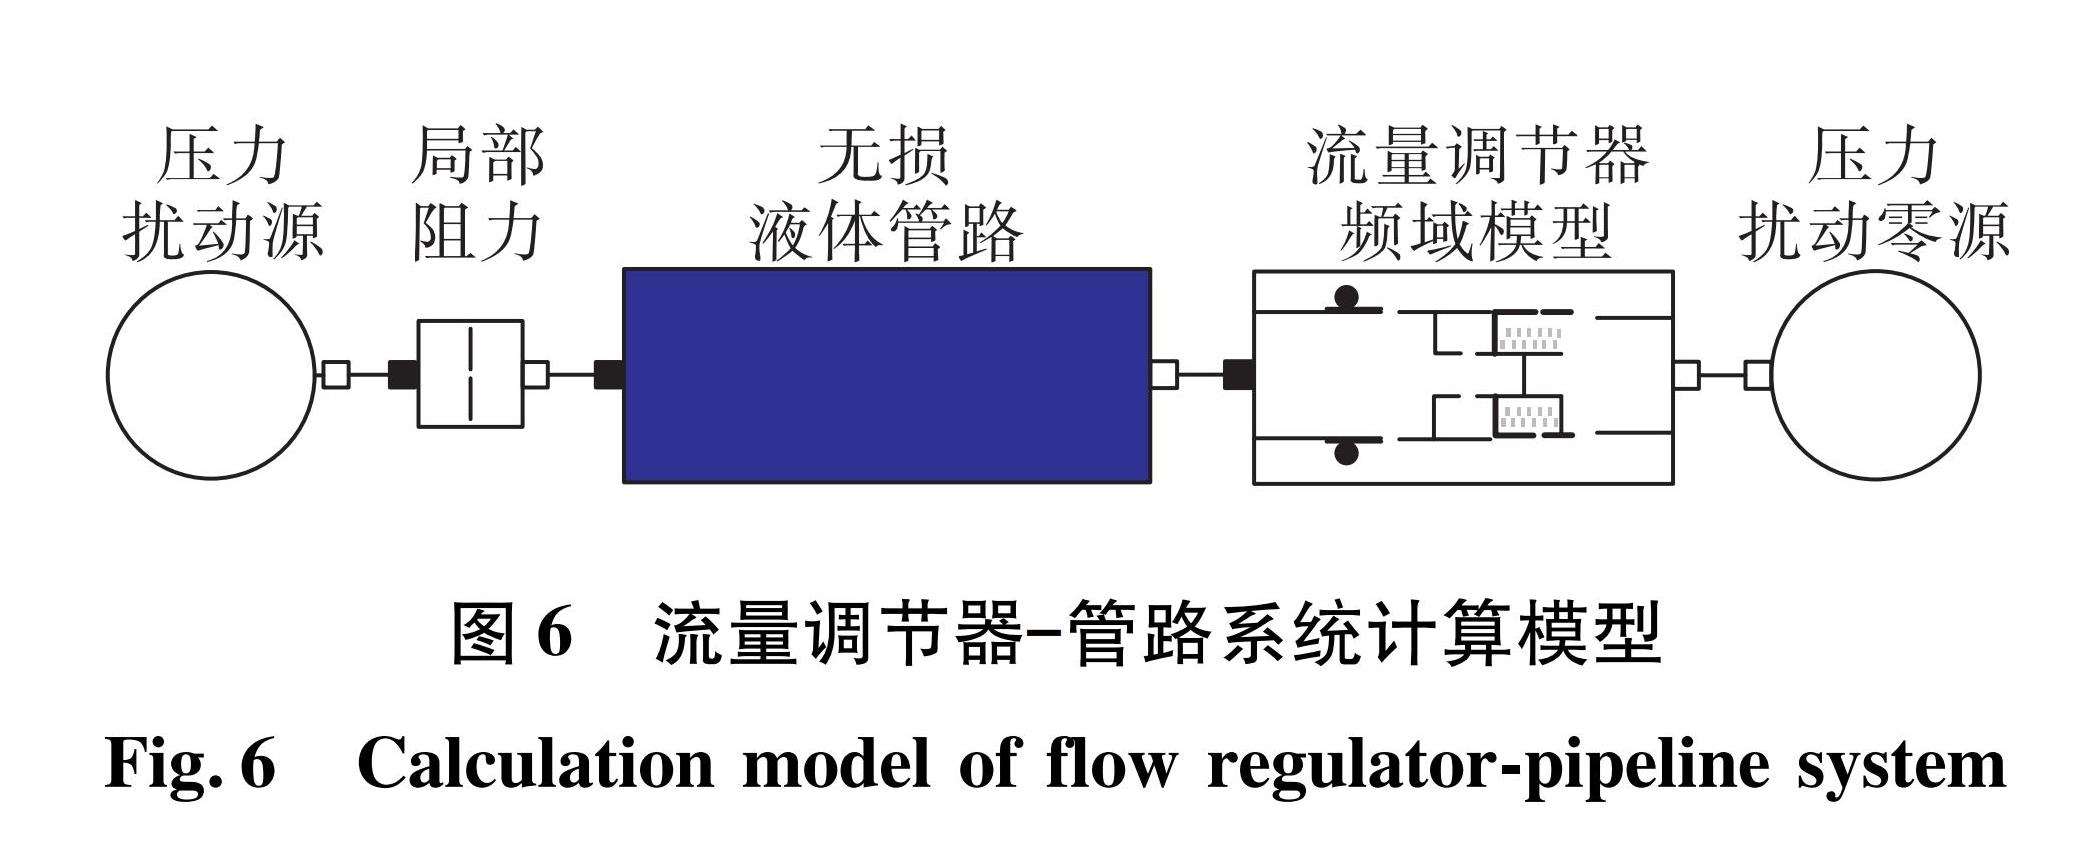 图6 流量调节器—管路系统计算模型<br/>Fig.6 Calculation model of flow regulator-pipeline system